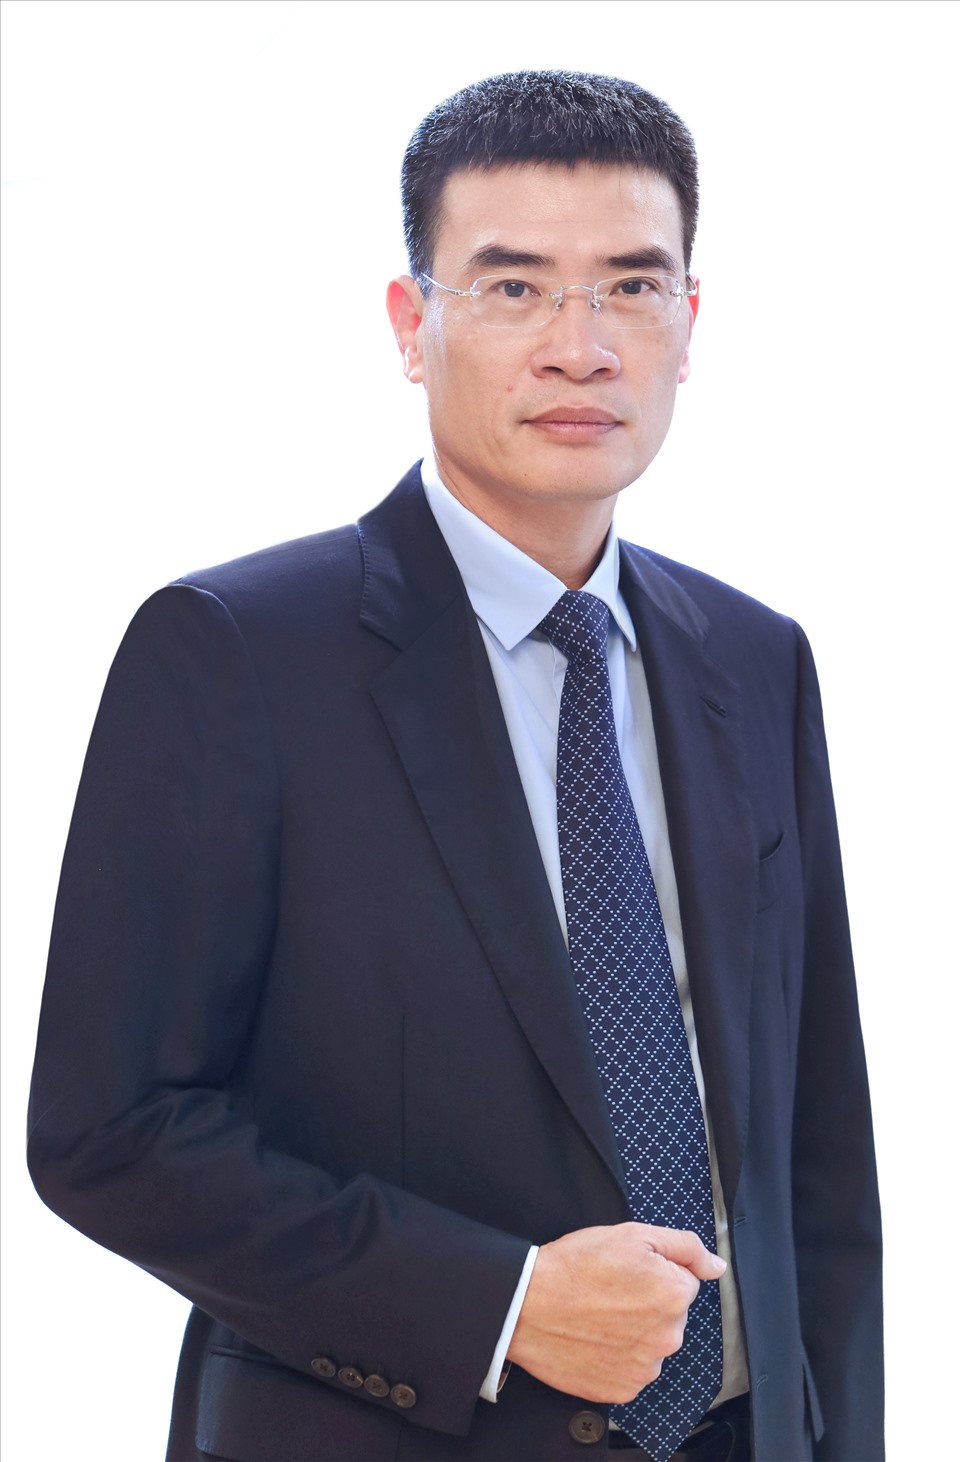 Ông Dương Mạnh Sơn – Phụ trách HĐQT, Tổng giám đốc PV GAS được HĐQT PV GAS nhất trí bầu giữ chức vụ Chủ tịch HĐQT PV GAS